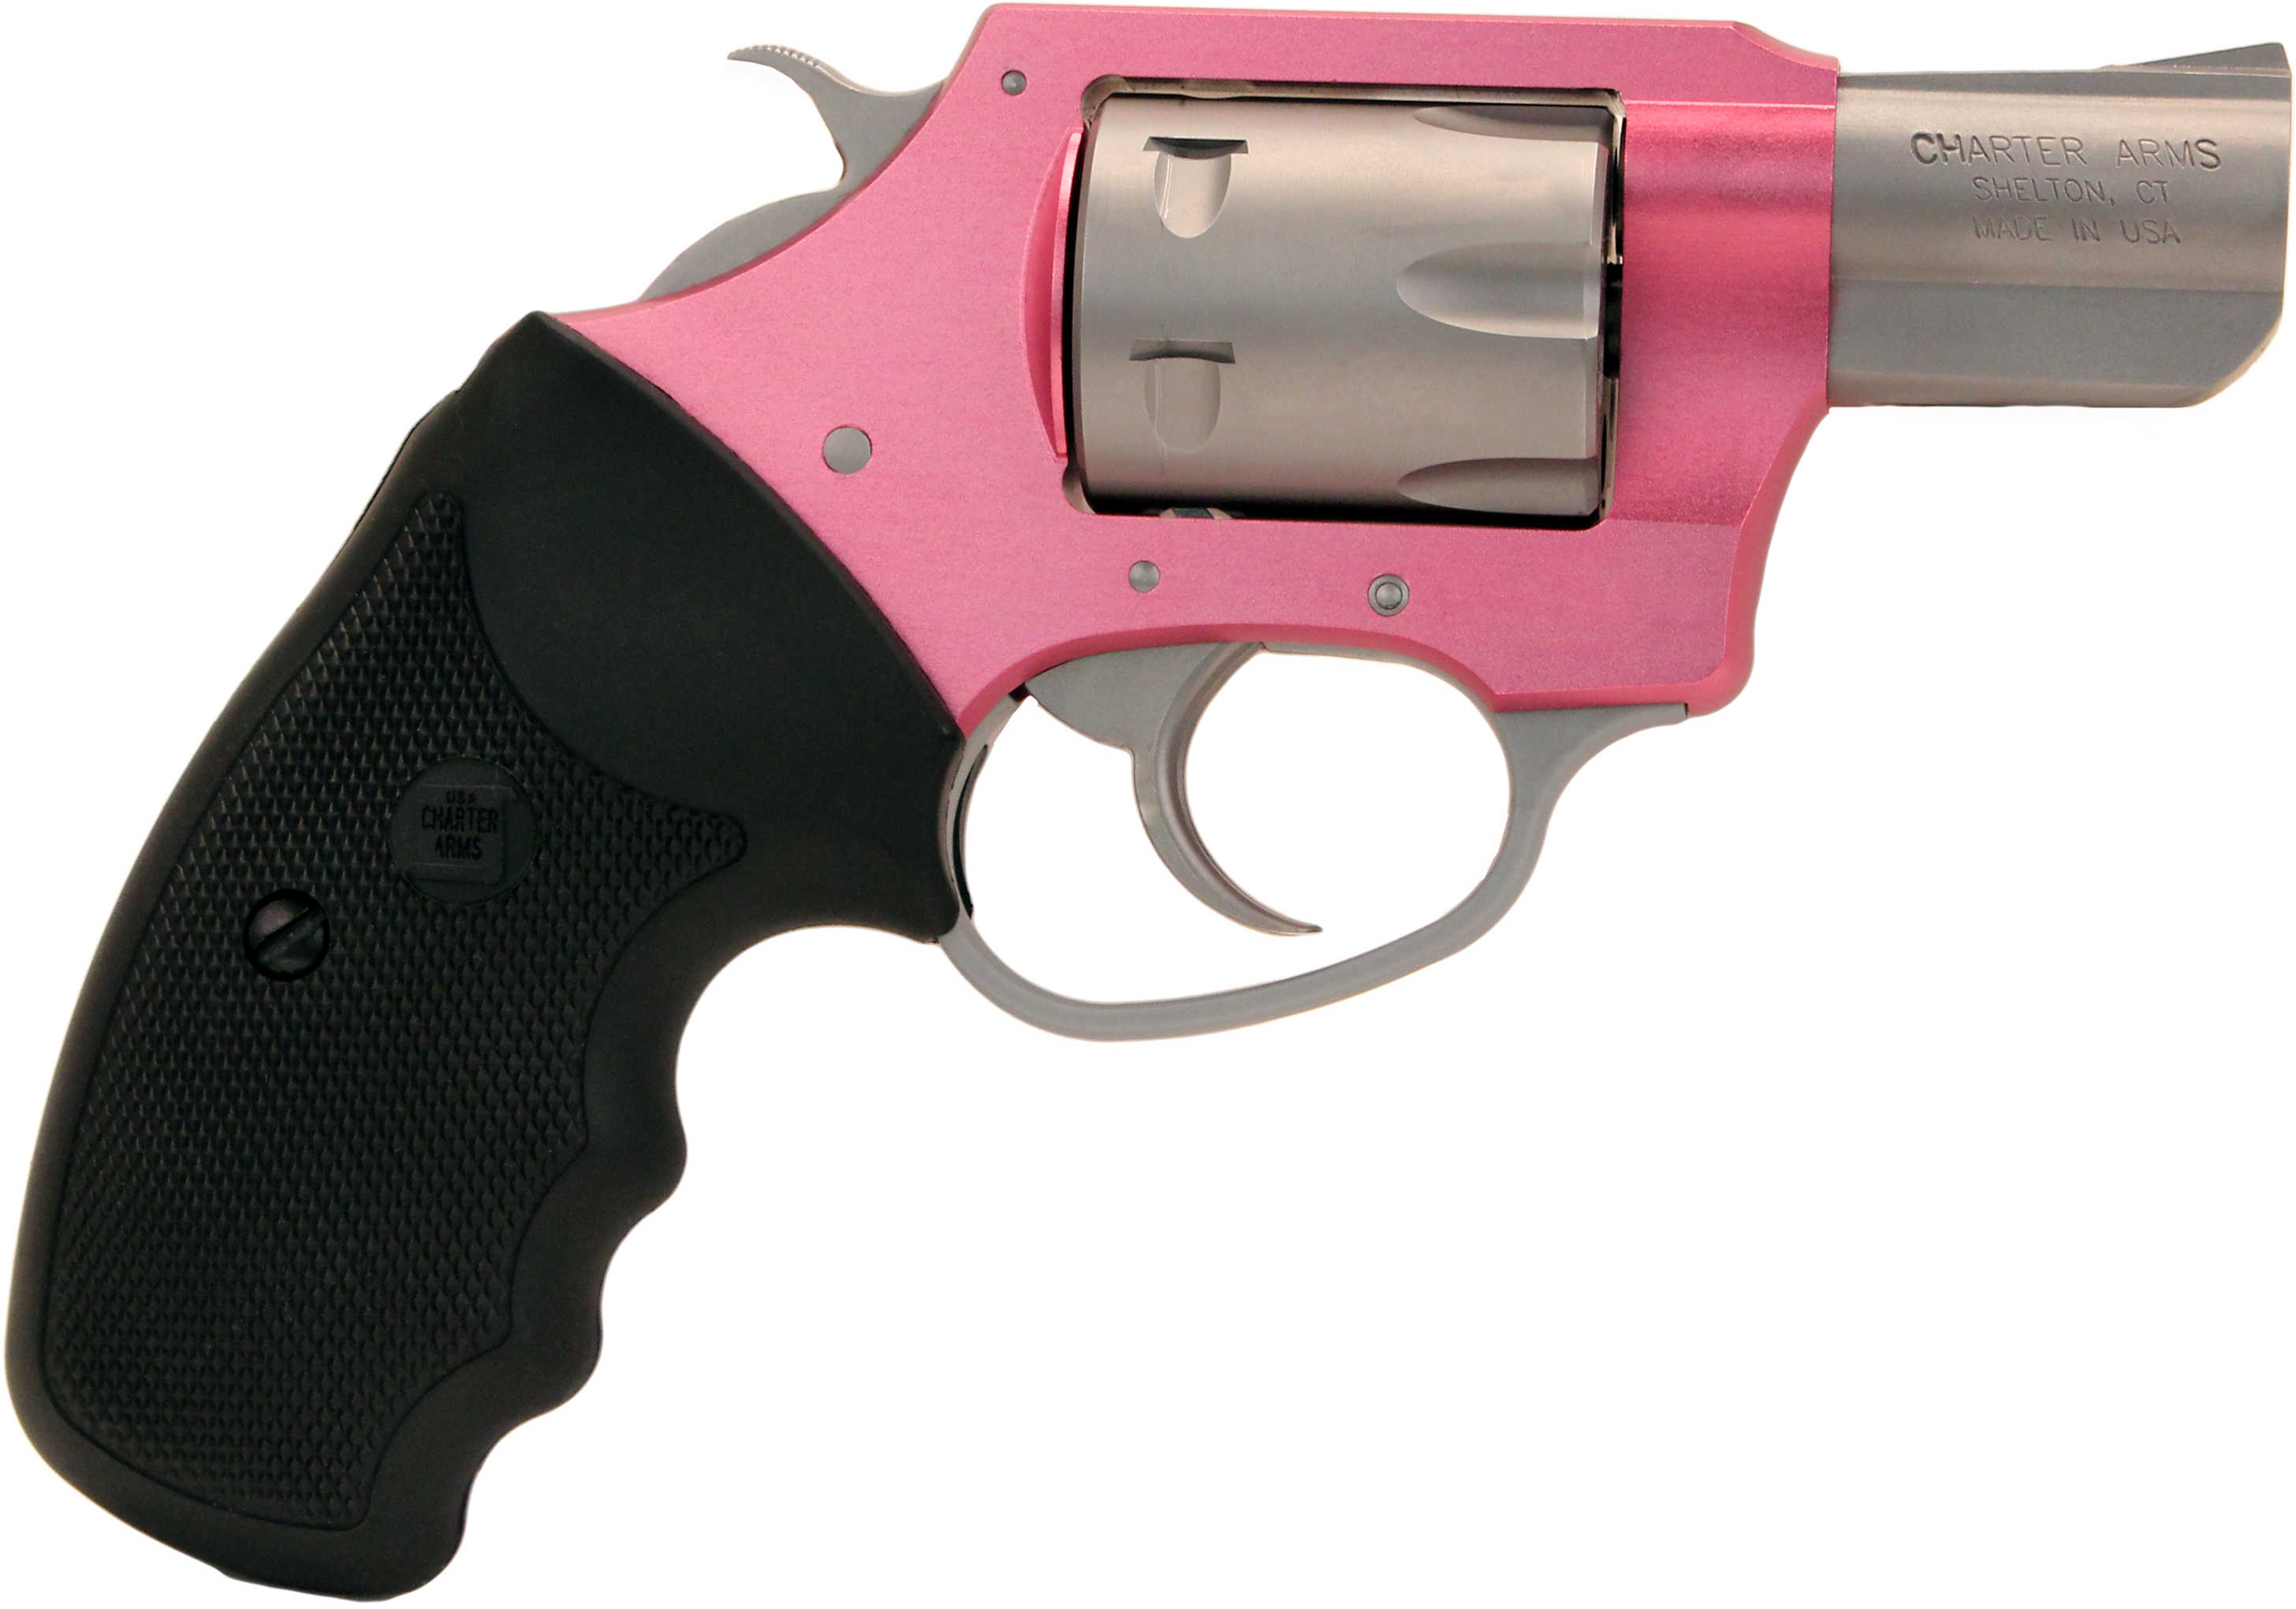 Charter Arms Revolver Pathfinder Pink Lady 22 Magnum 2" Barrel